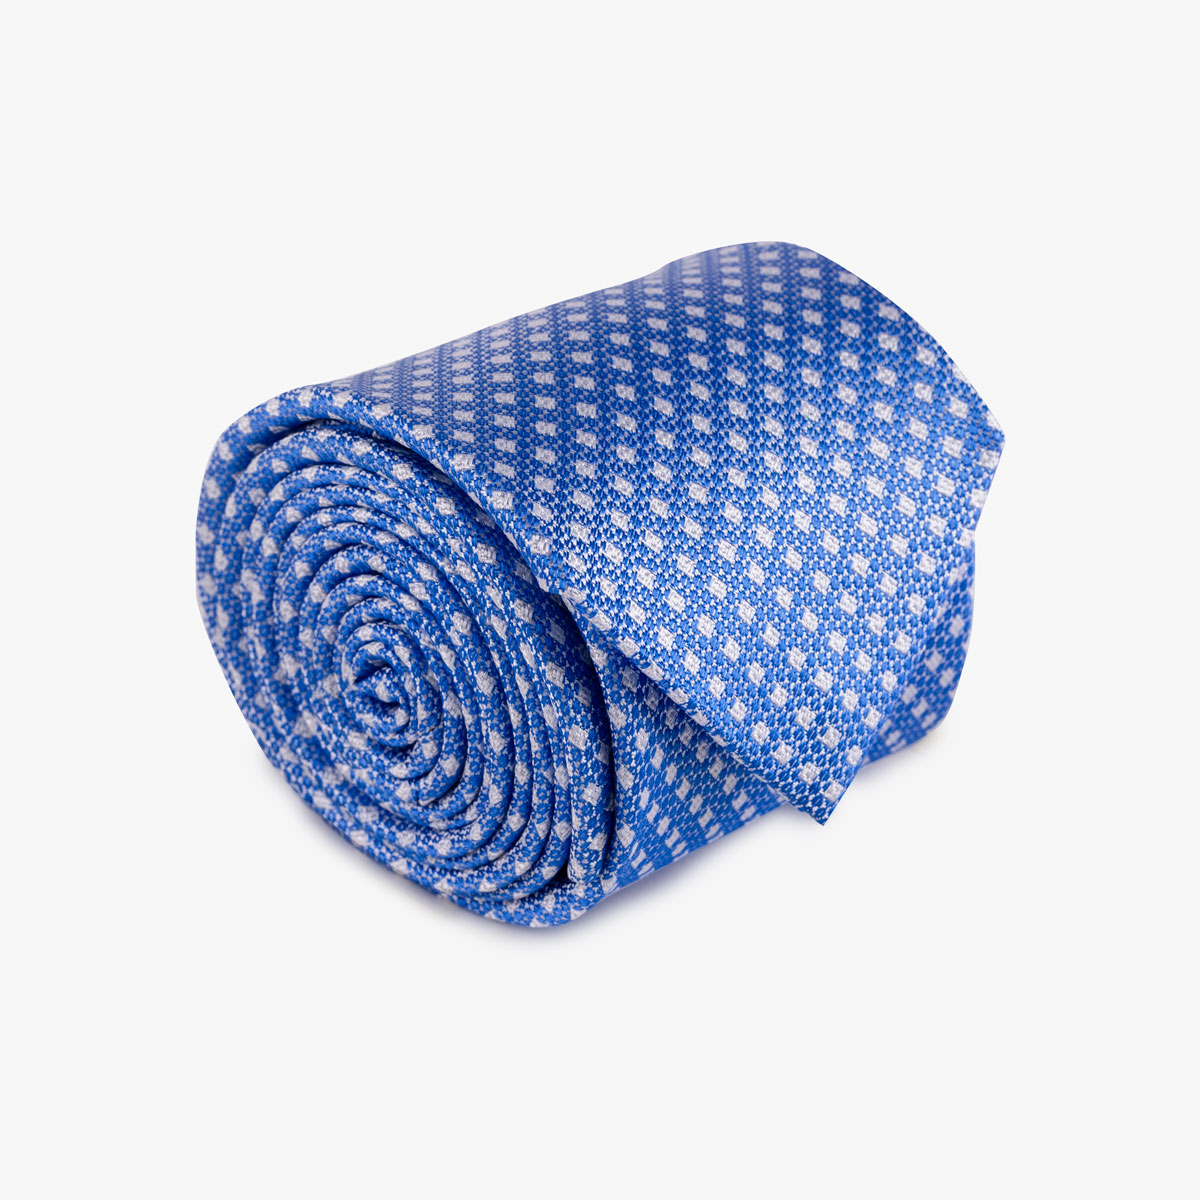 Krawatte aus Seide in hellblau gemustert